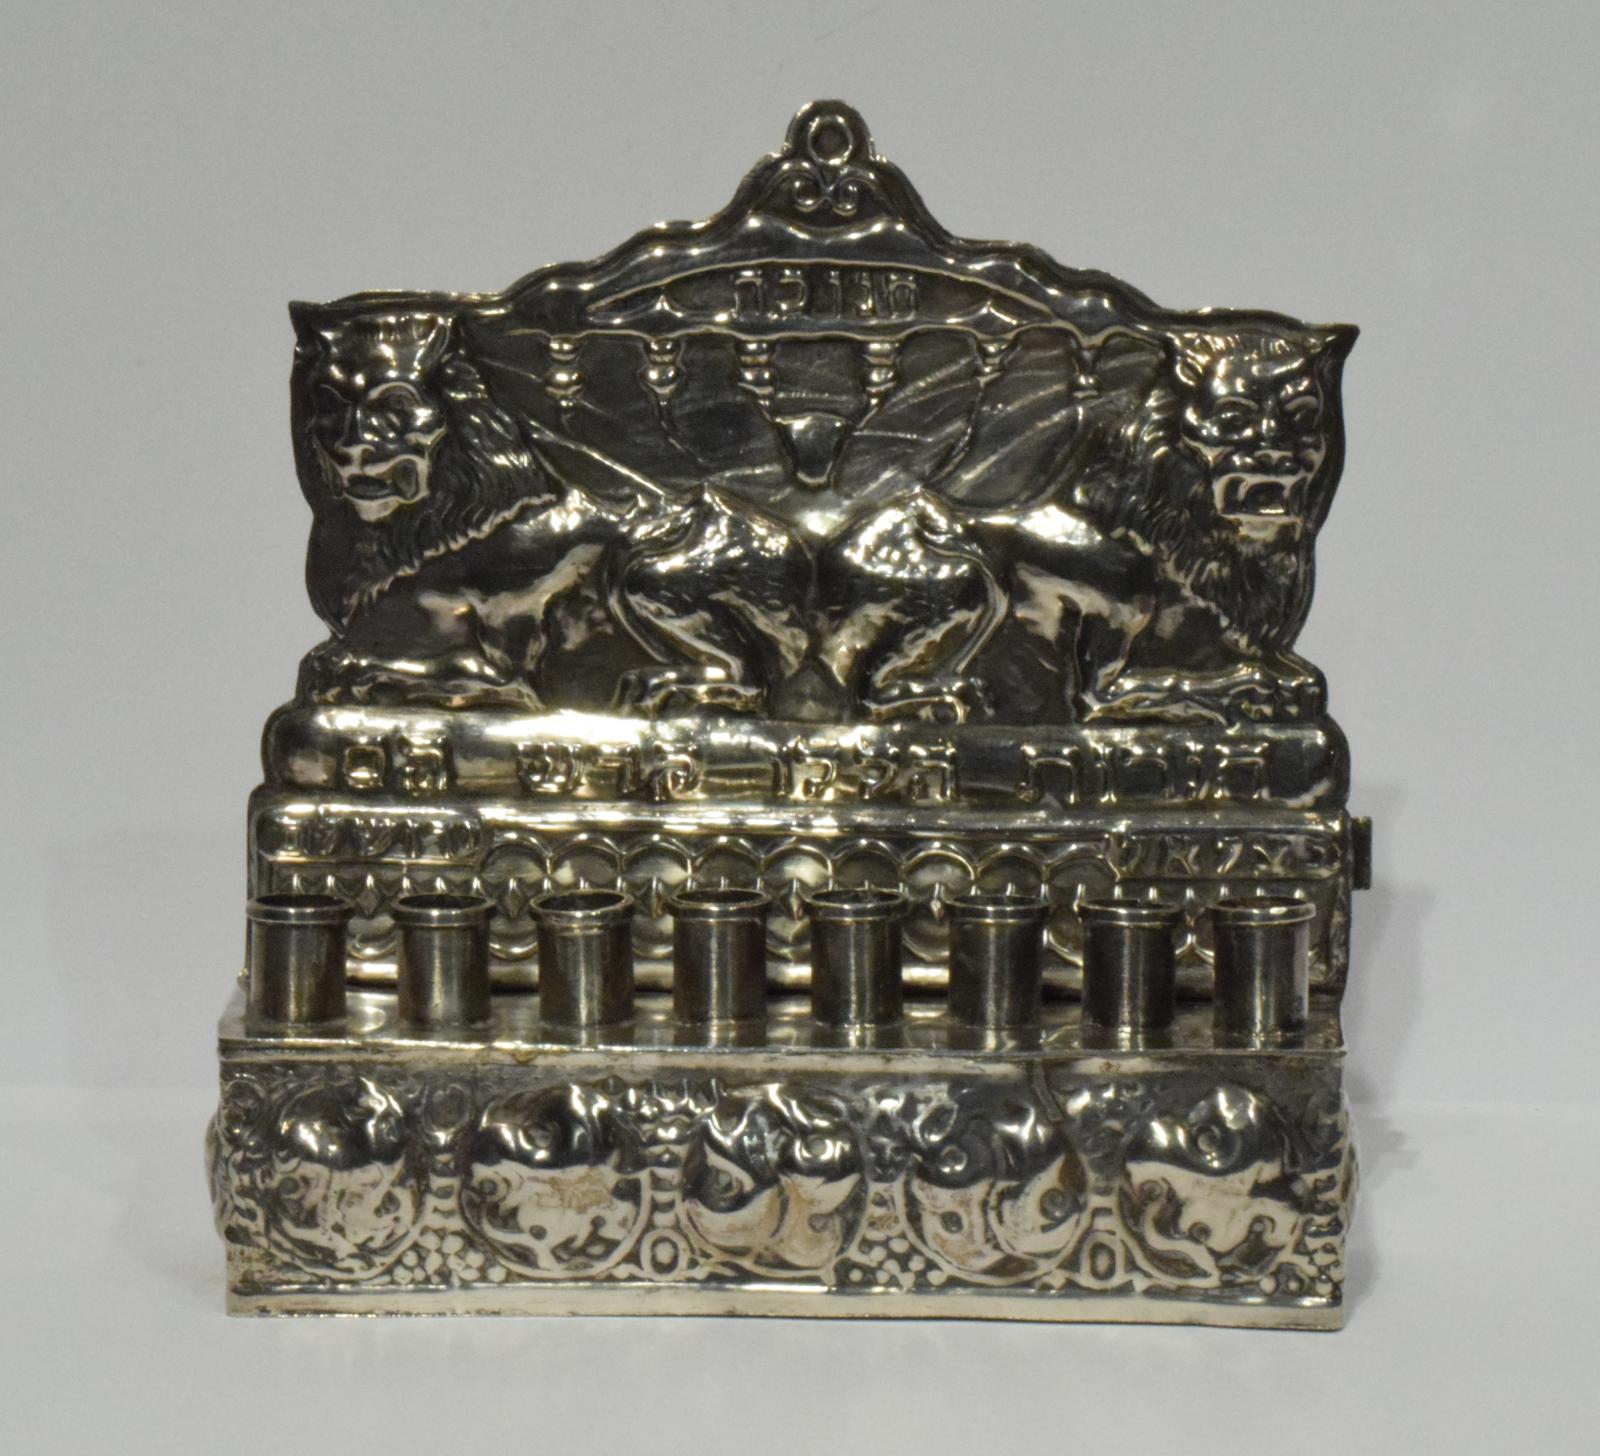 Miniature Hanukkiah (Hanukkah Lamp)